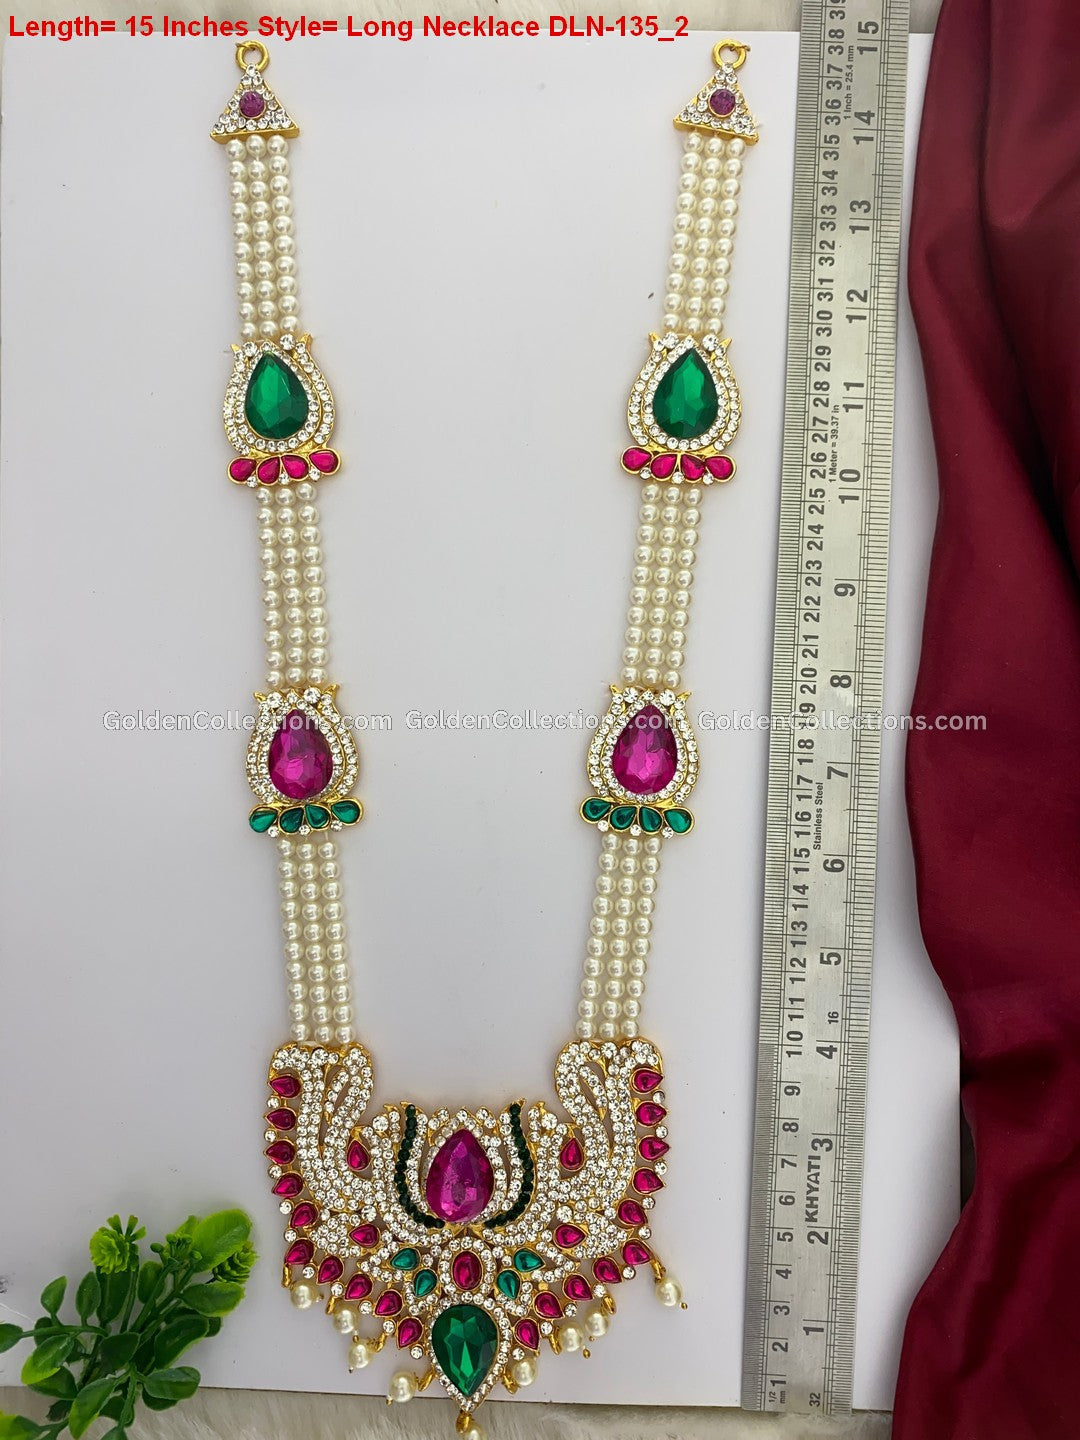 Graceful Divine Long Necklace - Ornate Design DLN-135 2